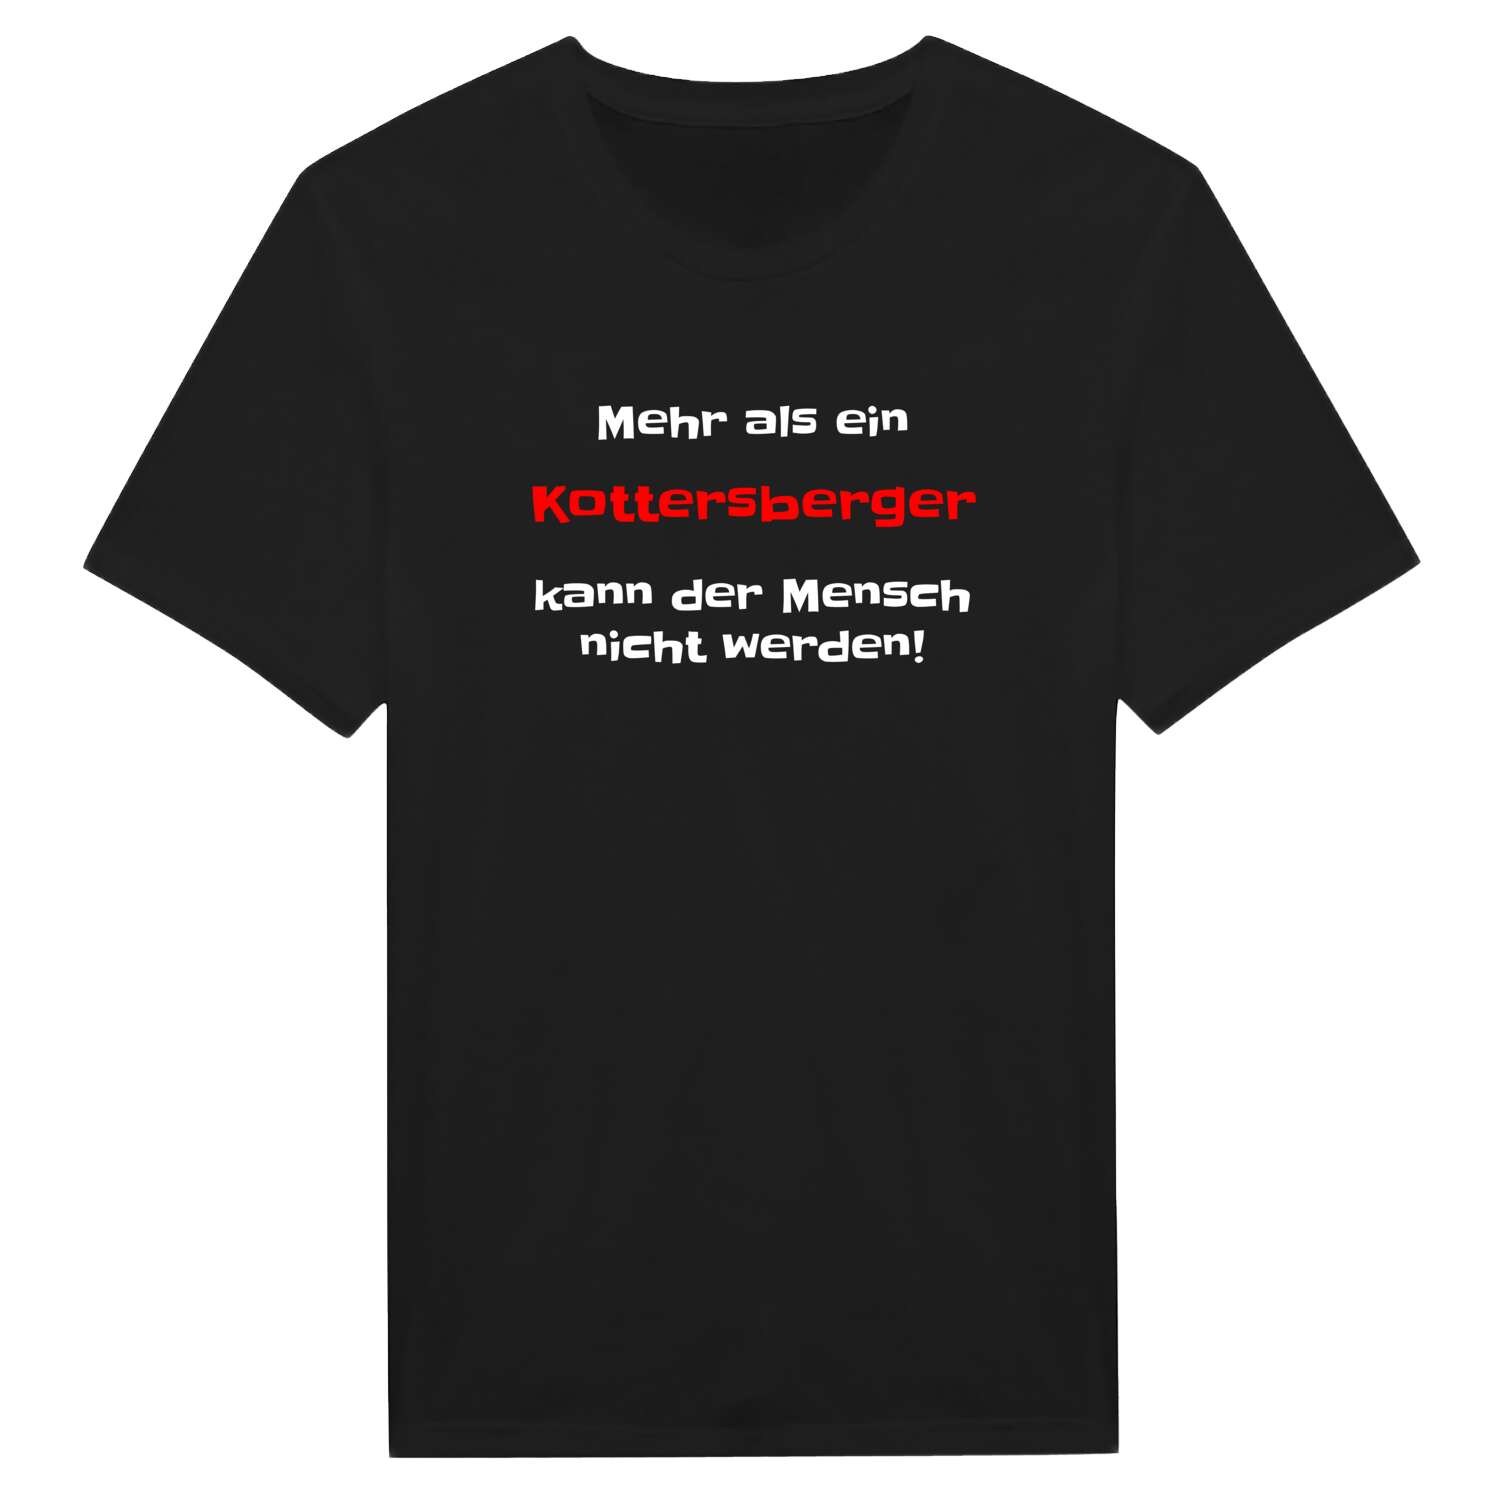 Kottersberg T-Shirt »Mehr als ein«